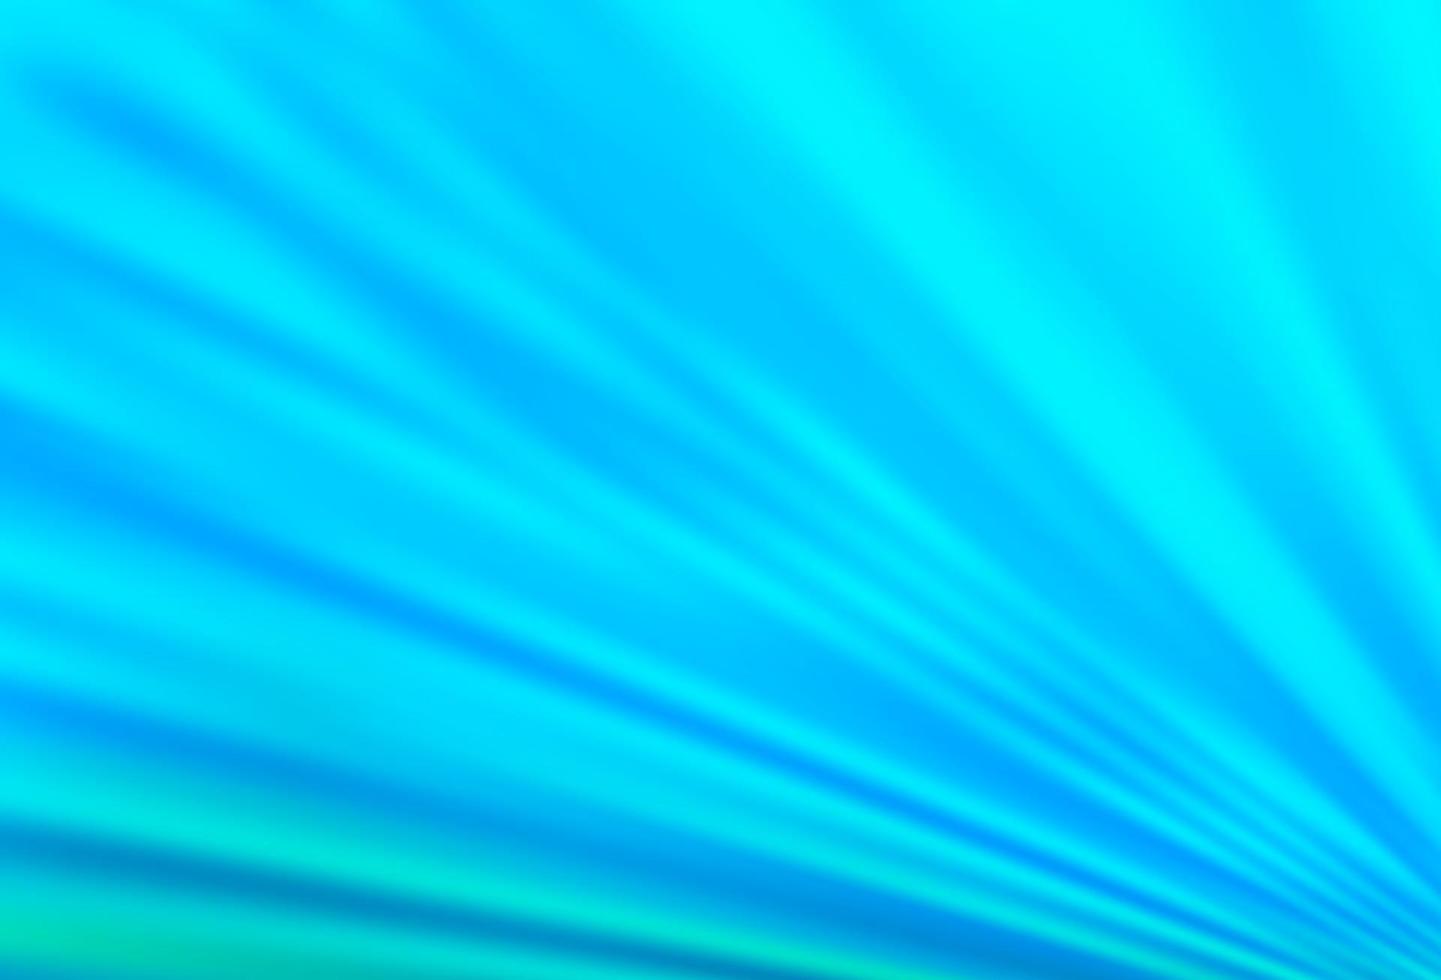 Telón de fondo de vector azul claro con líneas largas.